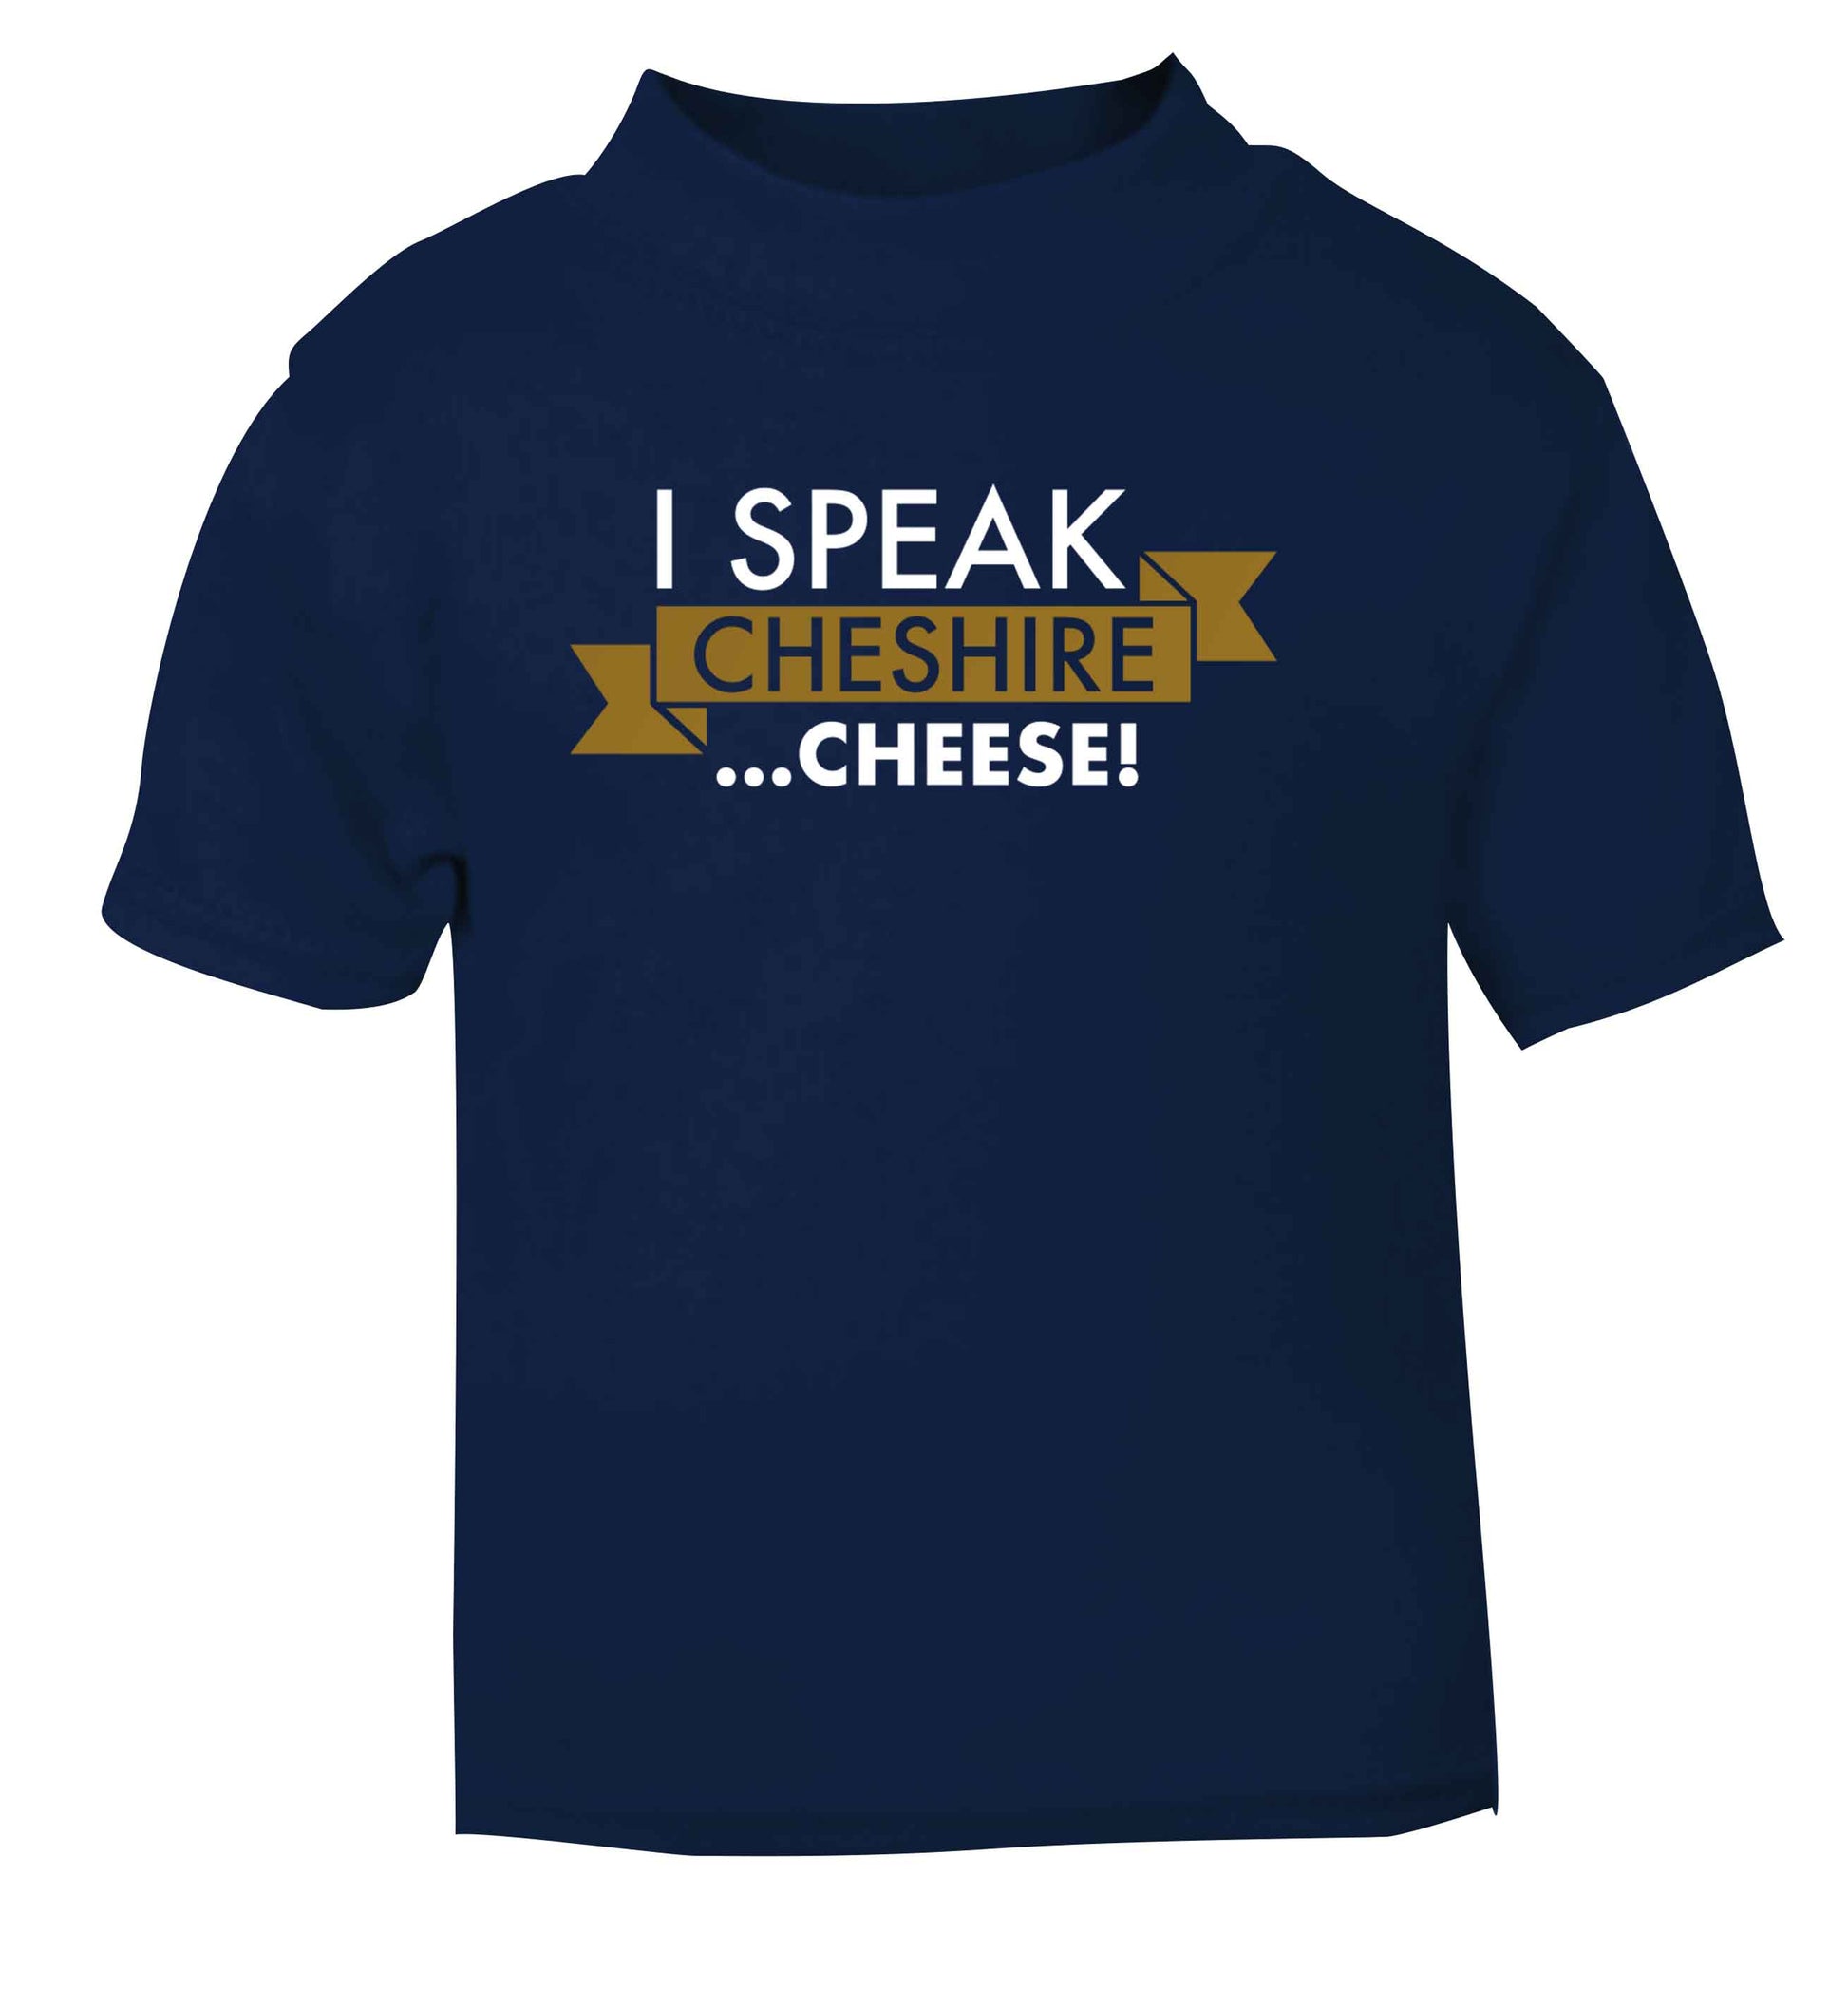 I speak Cheshire cheese navy Baby Toddler Tshirt 2 Years